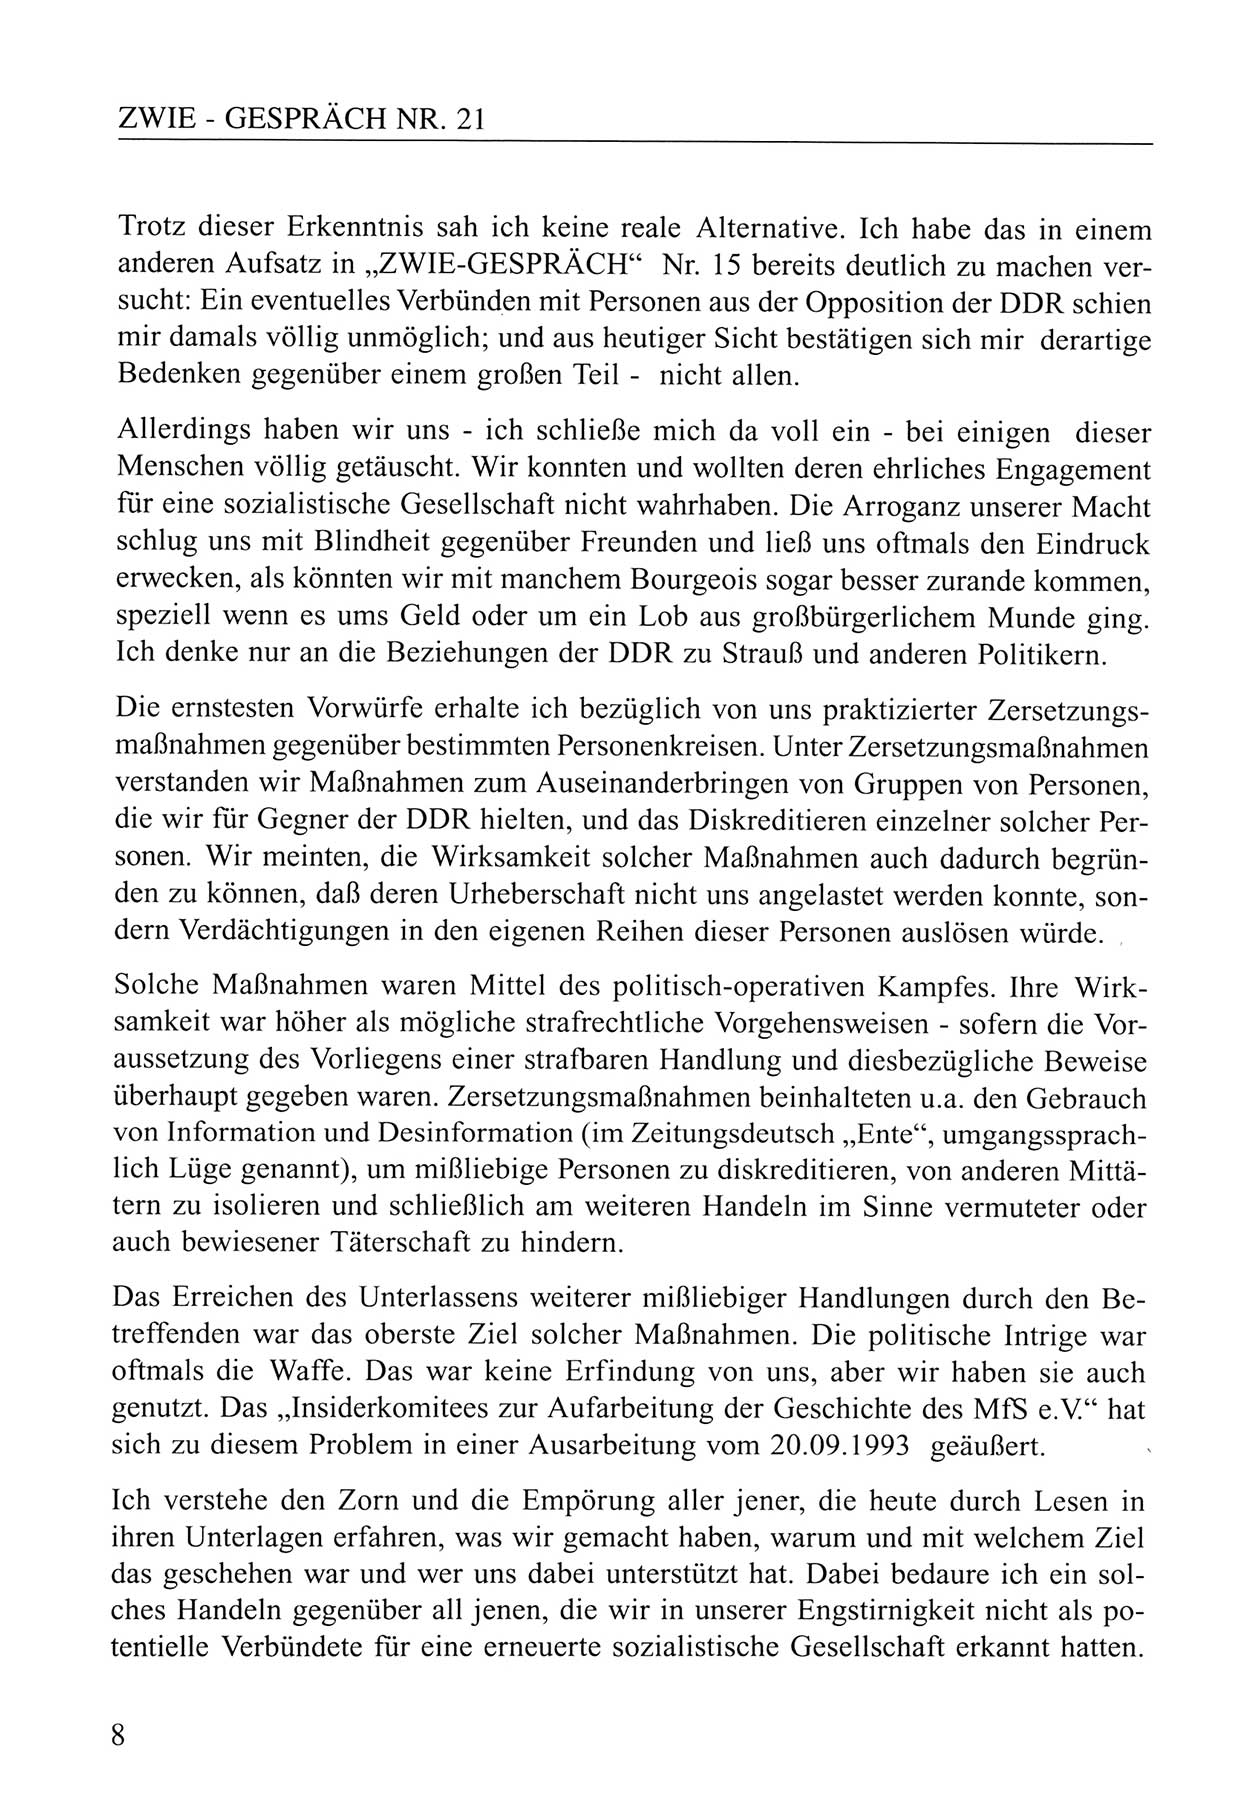 Zwie-Gespräch, Beiträge zum Umgang mit der Staatssicherheits-Vergangenheit [Deutsche Demokratische Republik (DDR)], Ausgabe Nr. 21, Berlin 1994, Seite 8 (Zwie-Gespr. Ausg. 21 1994, S. 8)